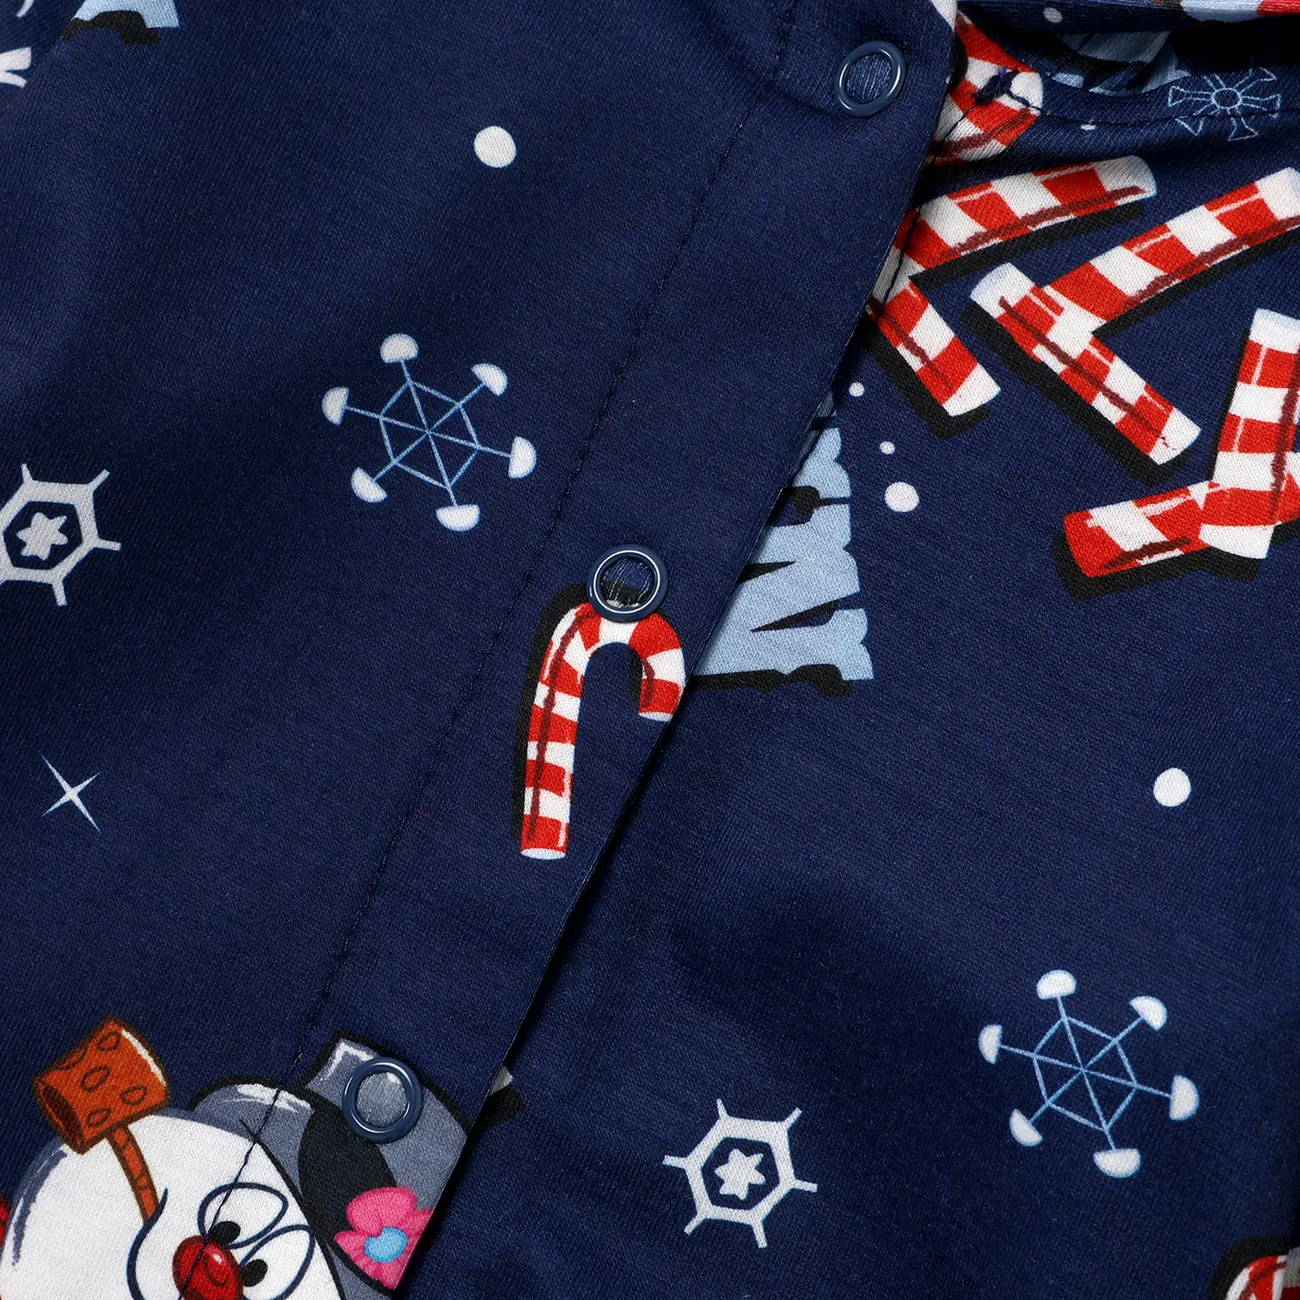 Frosty The Snowman Natal Look de família Manga comprida Conjuntos de roupa para a família Pijamas (Flame Resistant) Azul Escuro big image 1